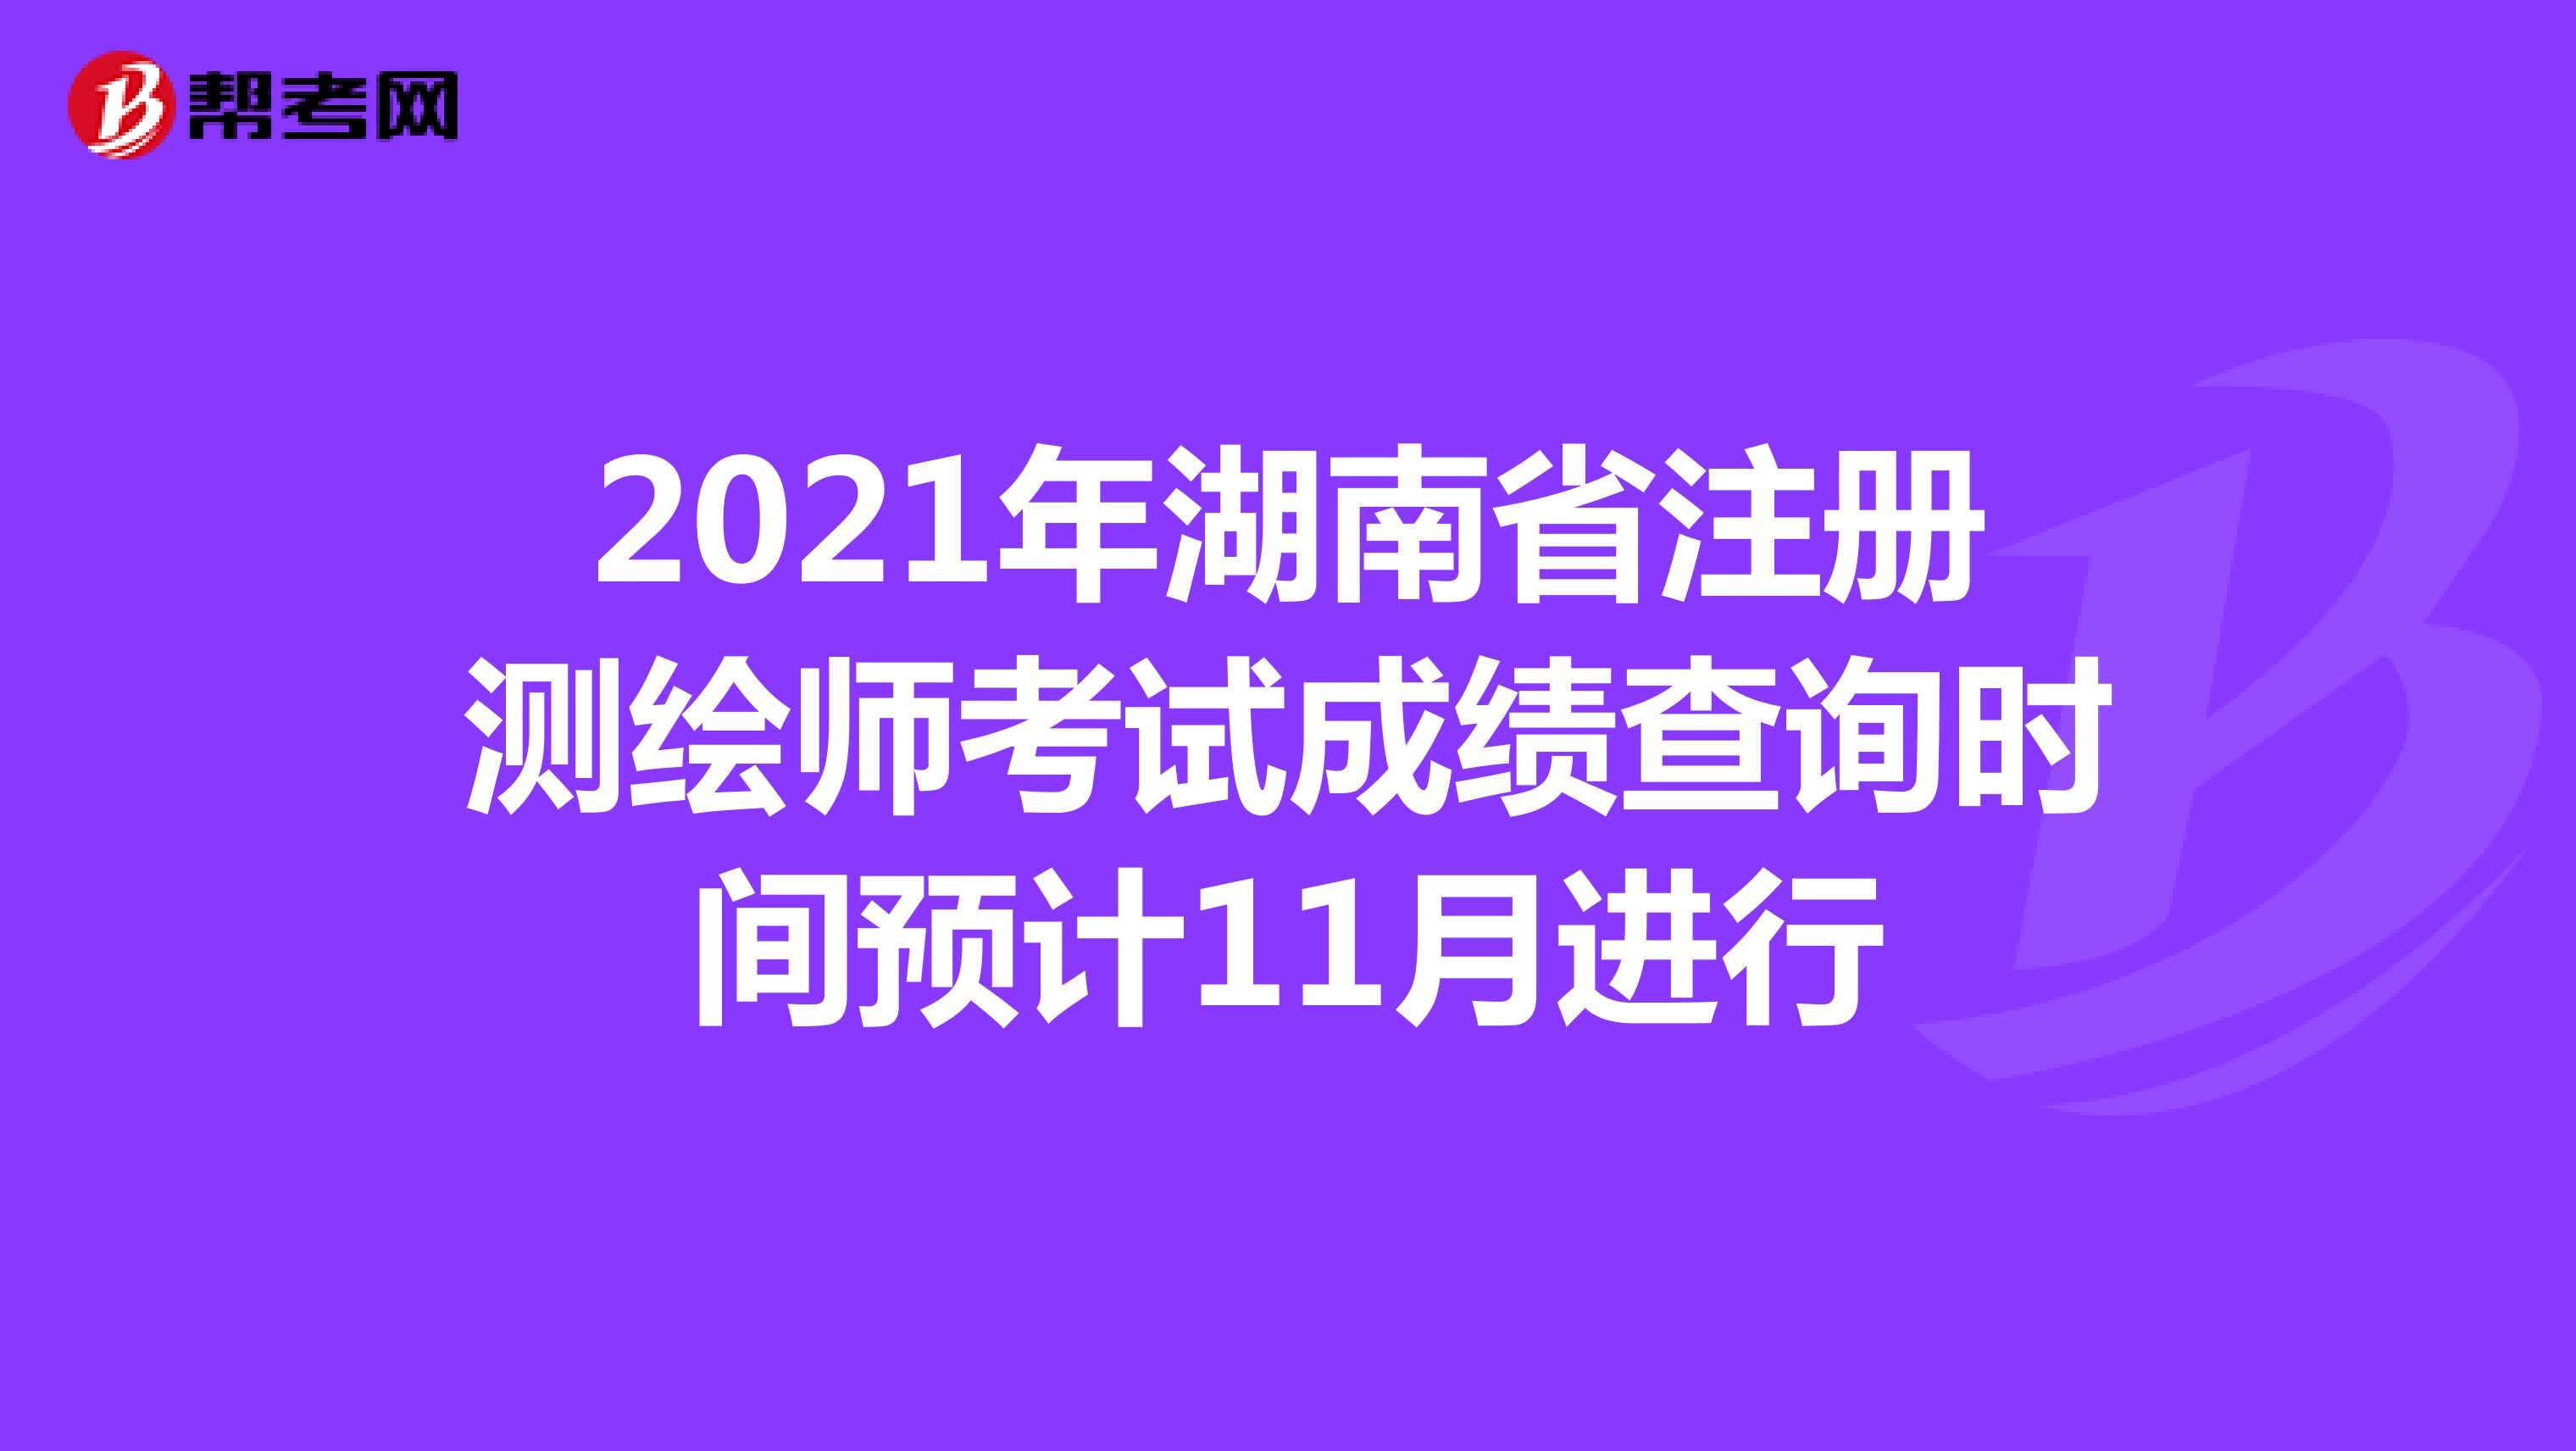 2021年湖南省注册测绘师考试成绩查询时间预计11月进行